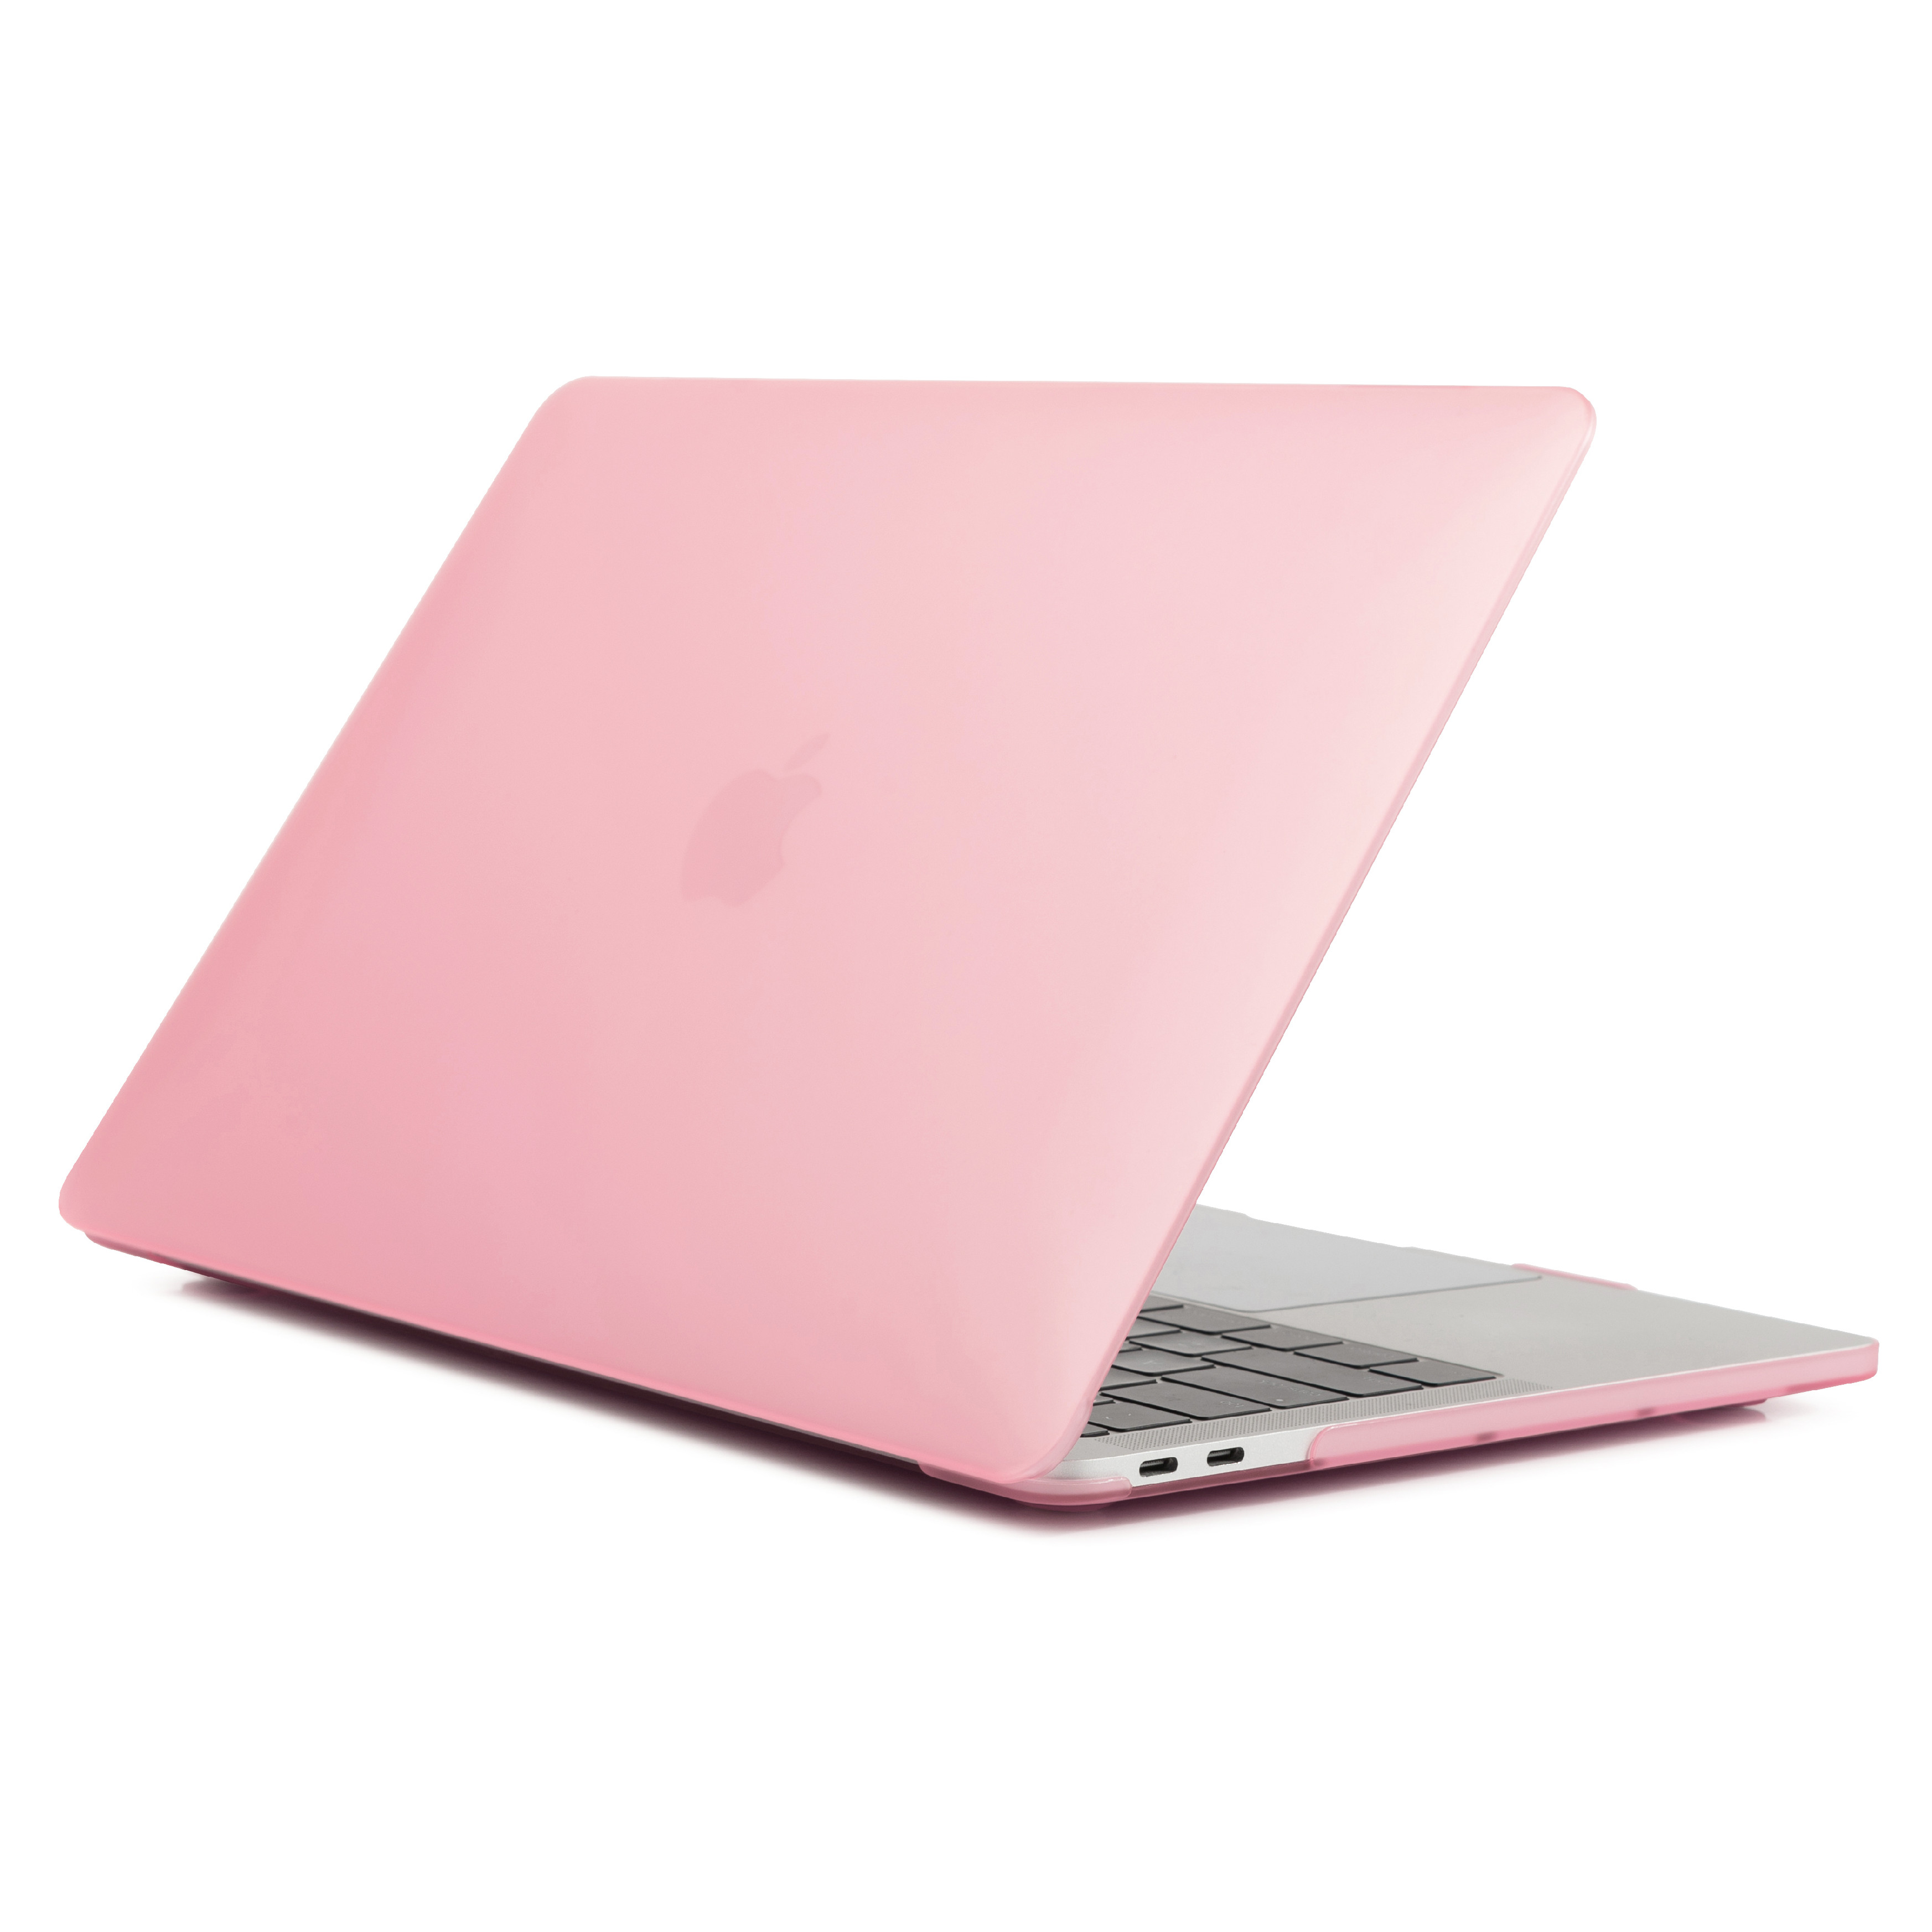 iPouzdro.cz pro MacBook Pro 15 (2016-2019) 2222221001545 růžová